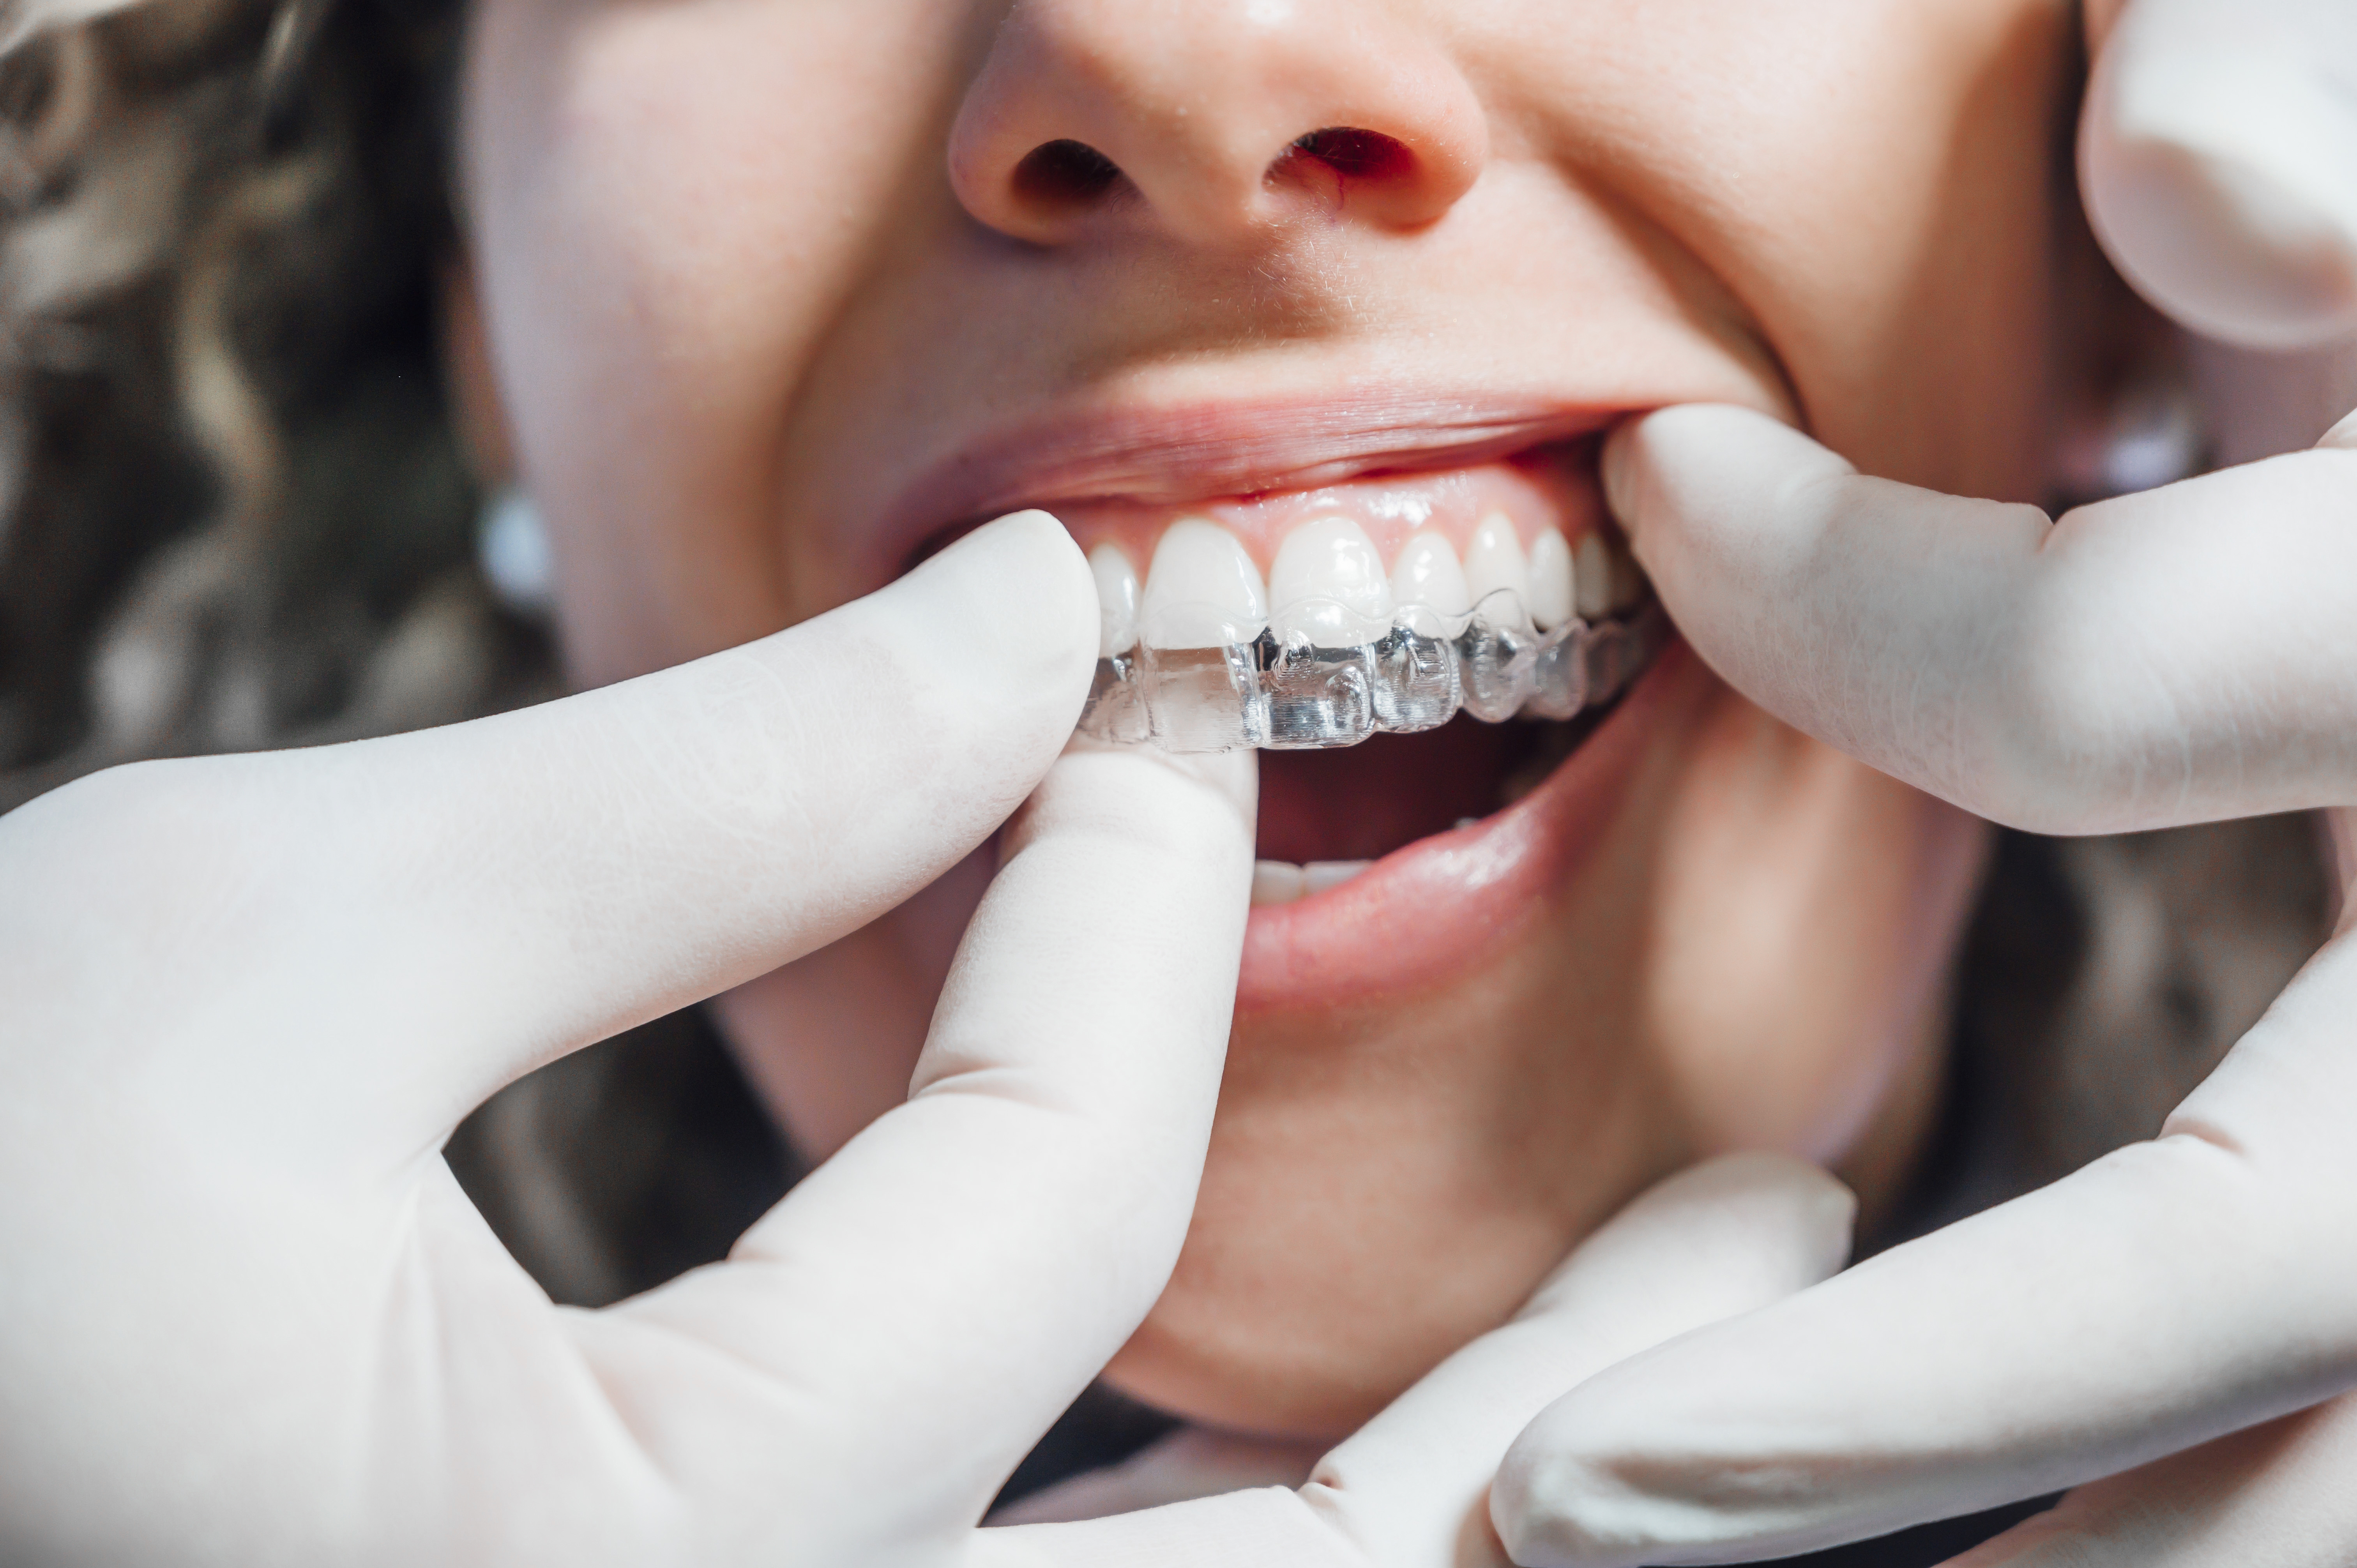 Une fois au cabinet dentaire, tous les patients partagent un même souhait, celui de pouvoir arborer un beau sourire confiant  (Adobe stock 311925482)